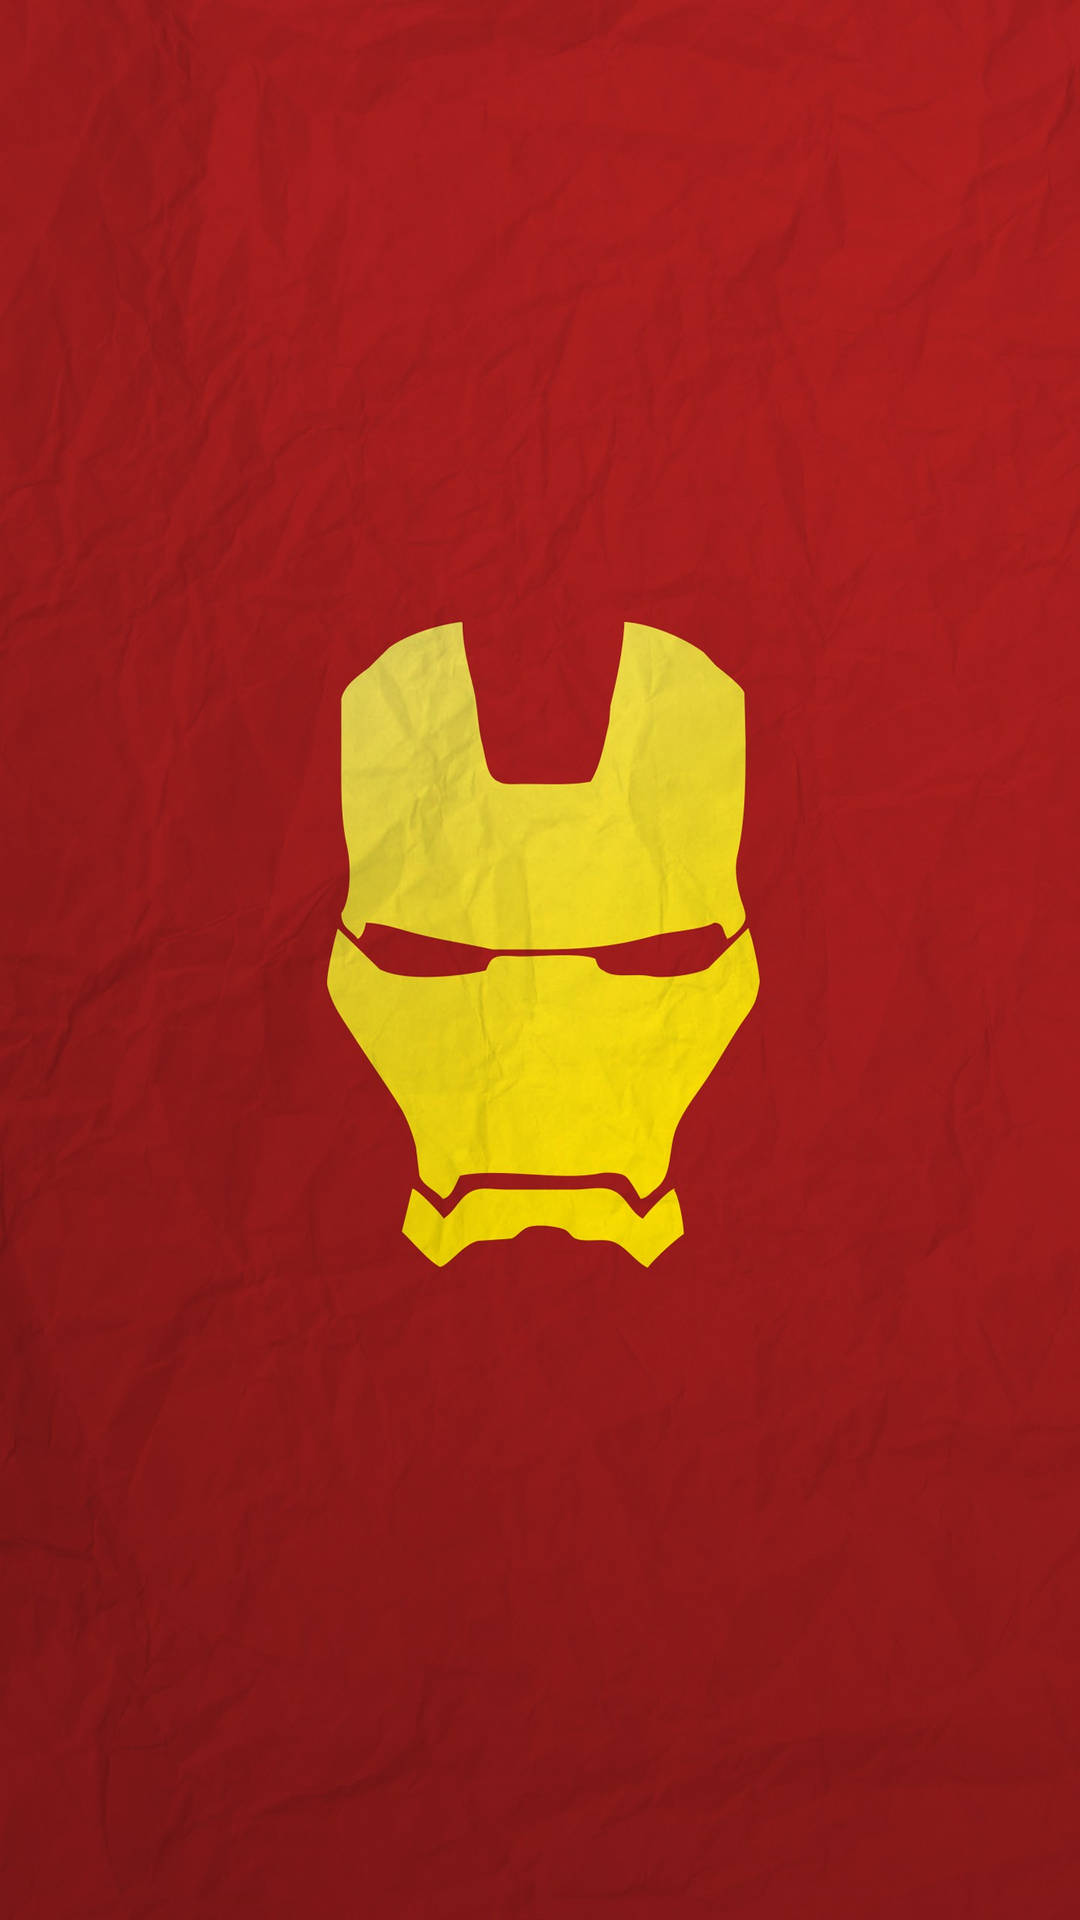 Sfondominimalista In Alta Definizione Di Iron Man, Il Supereroe. Sfondo